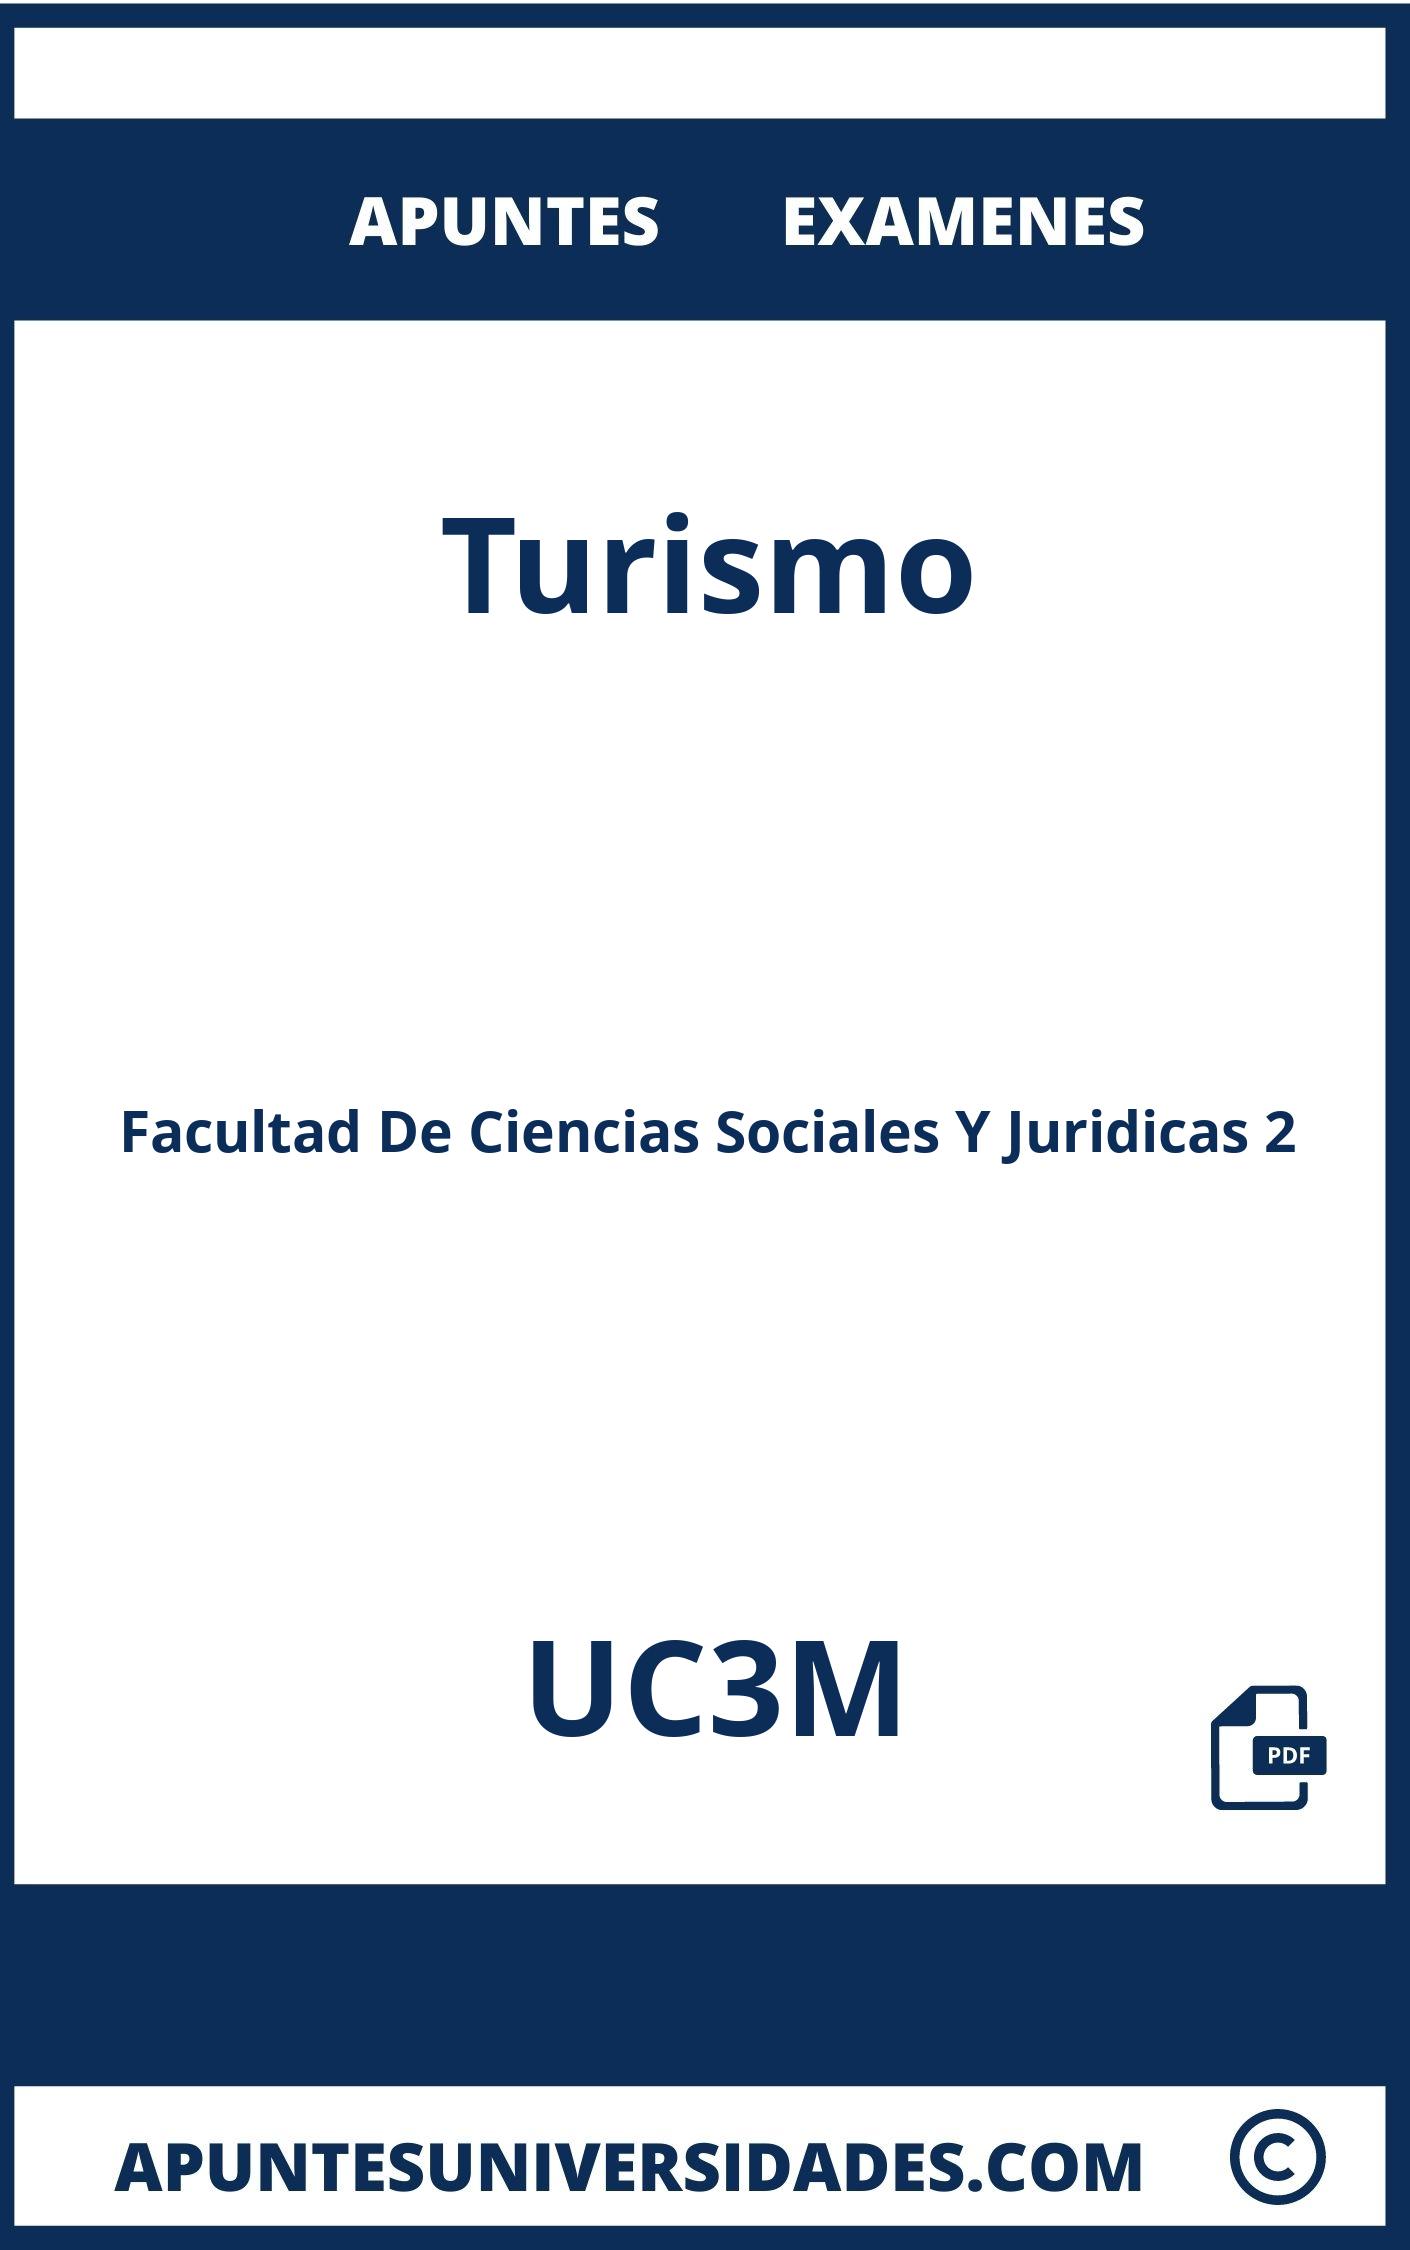 Apuntes y Examenes de Turismo UC3M